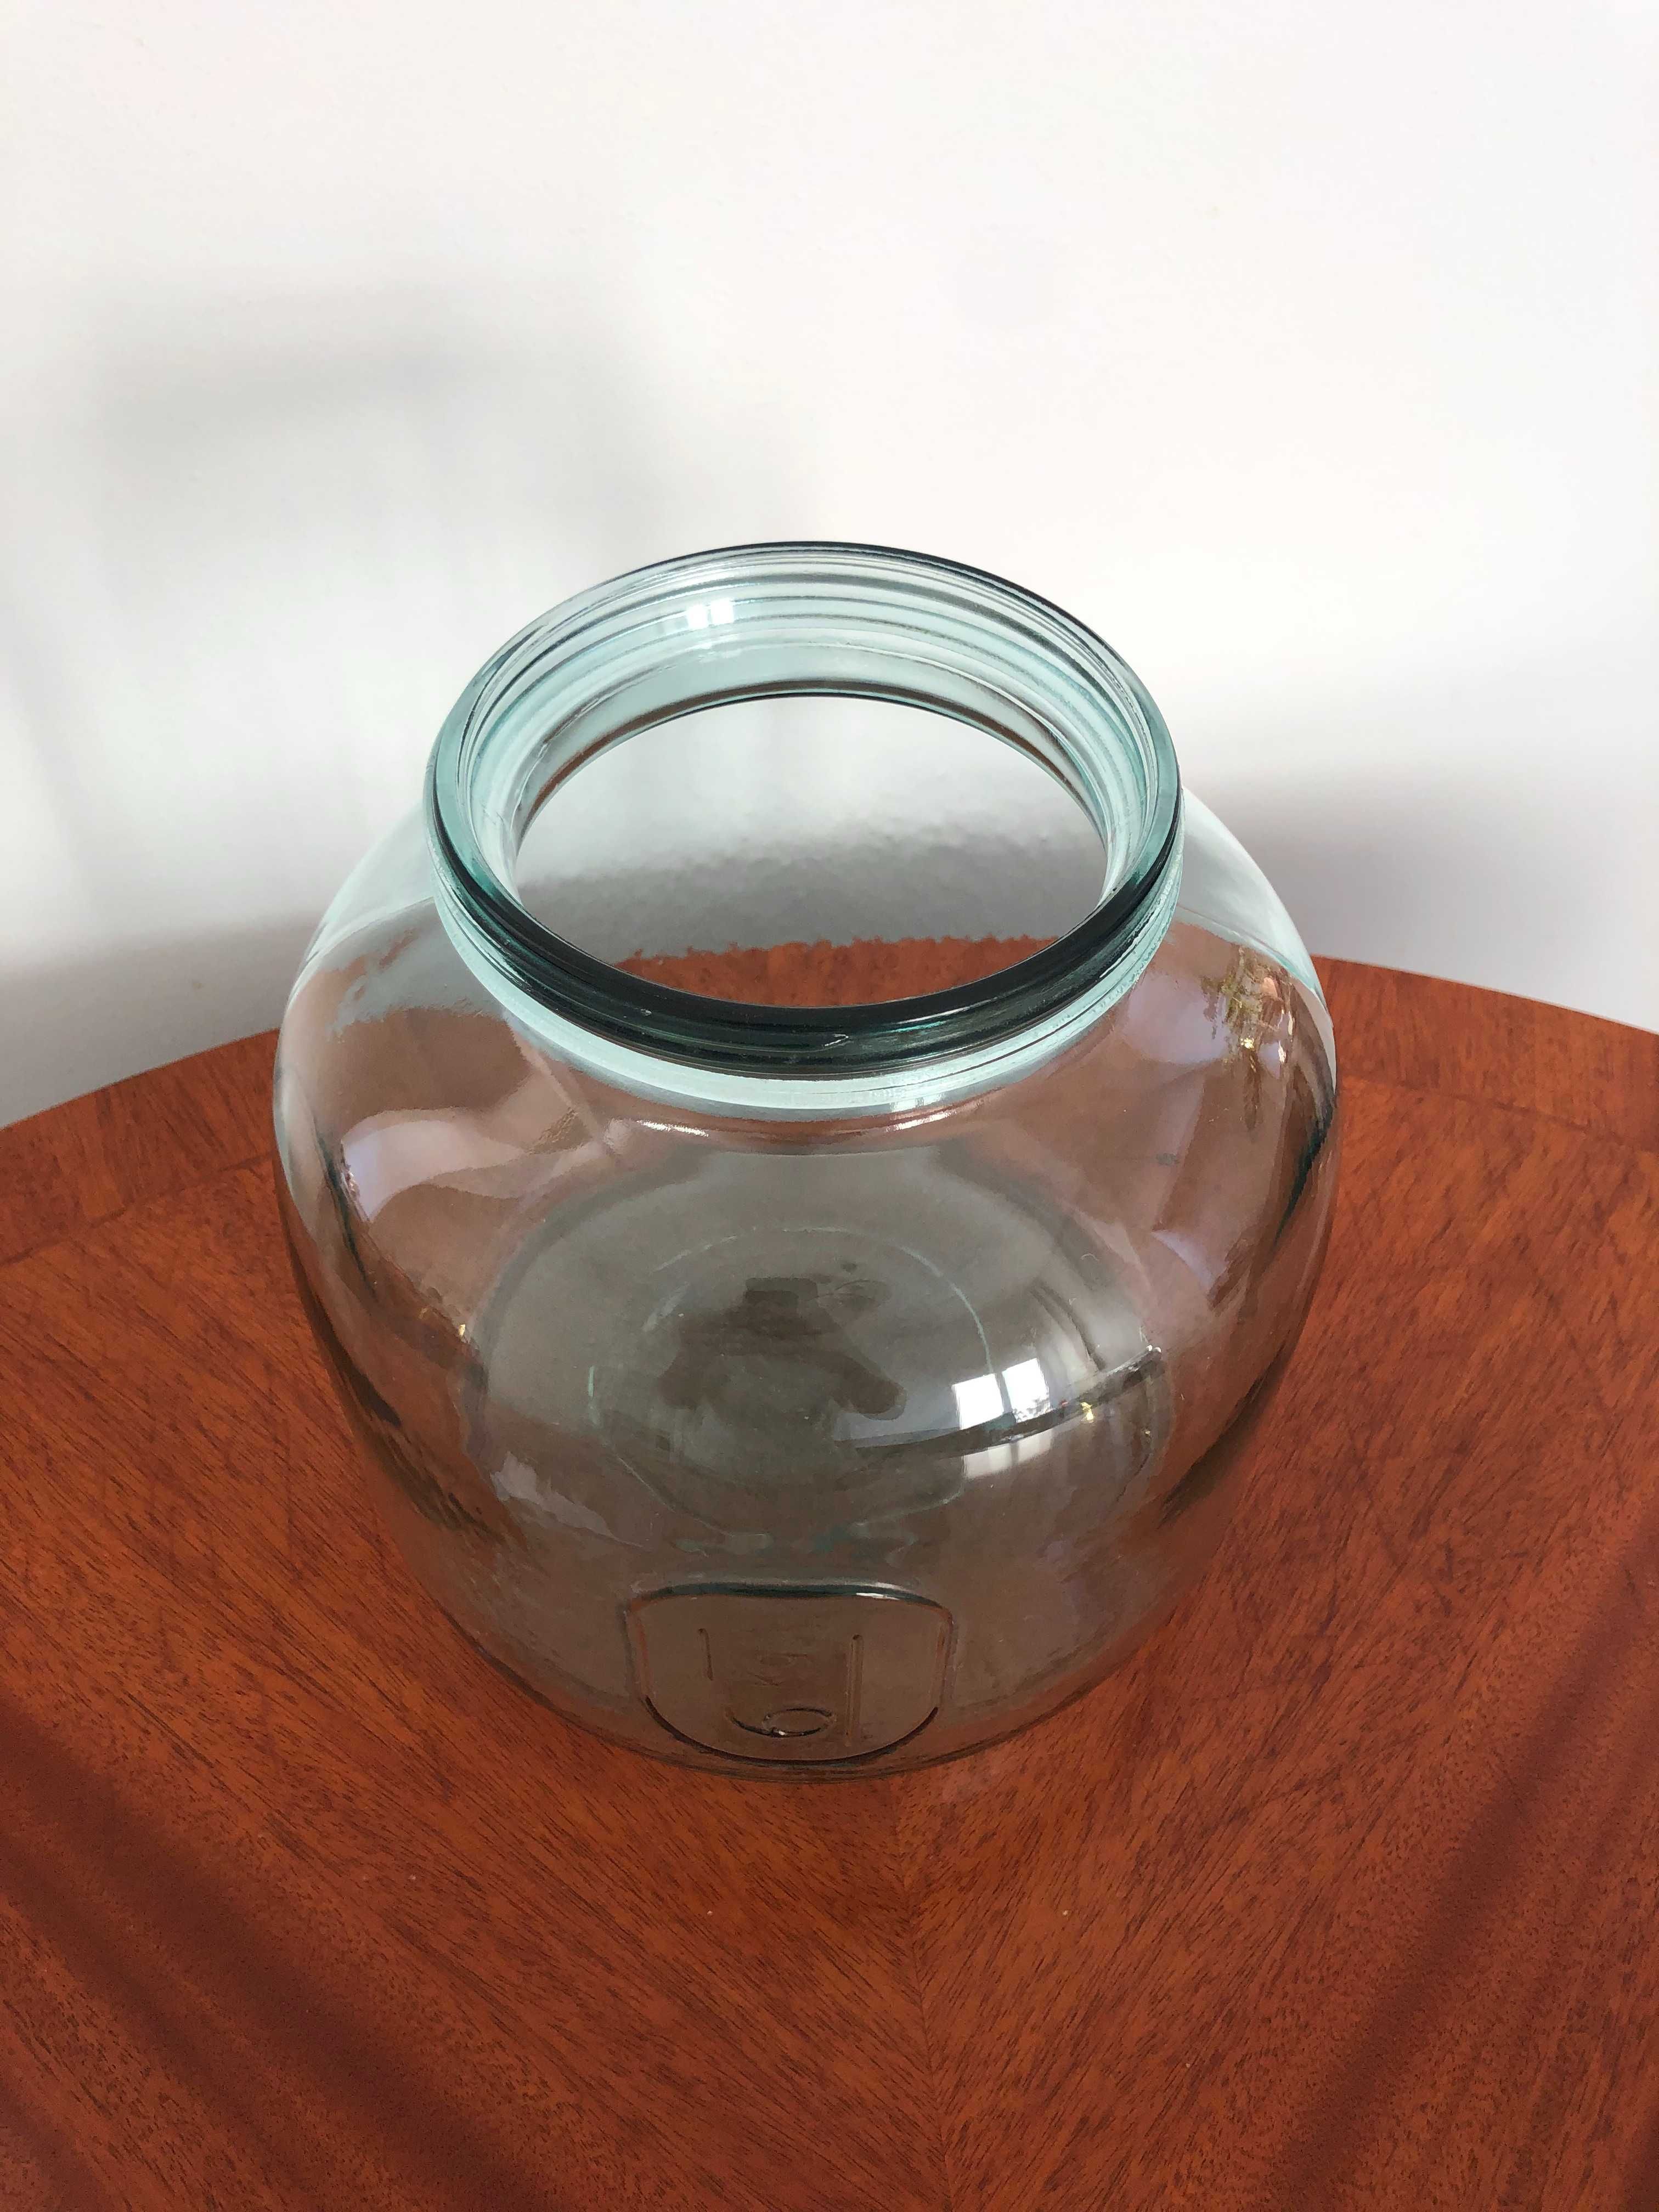 ogromny słój słoik 6 litrów wazon szklany szkło do przechowywania